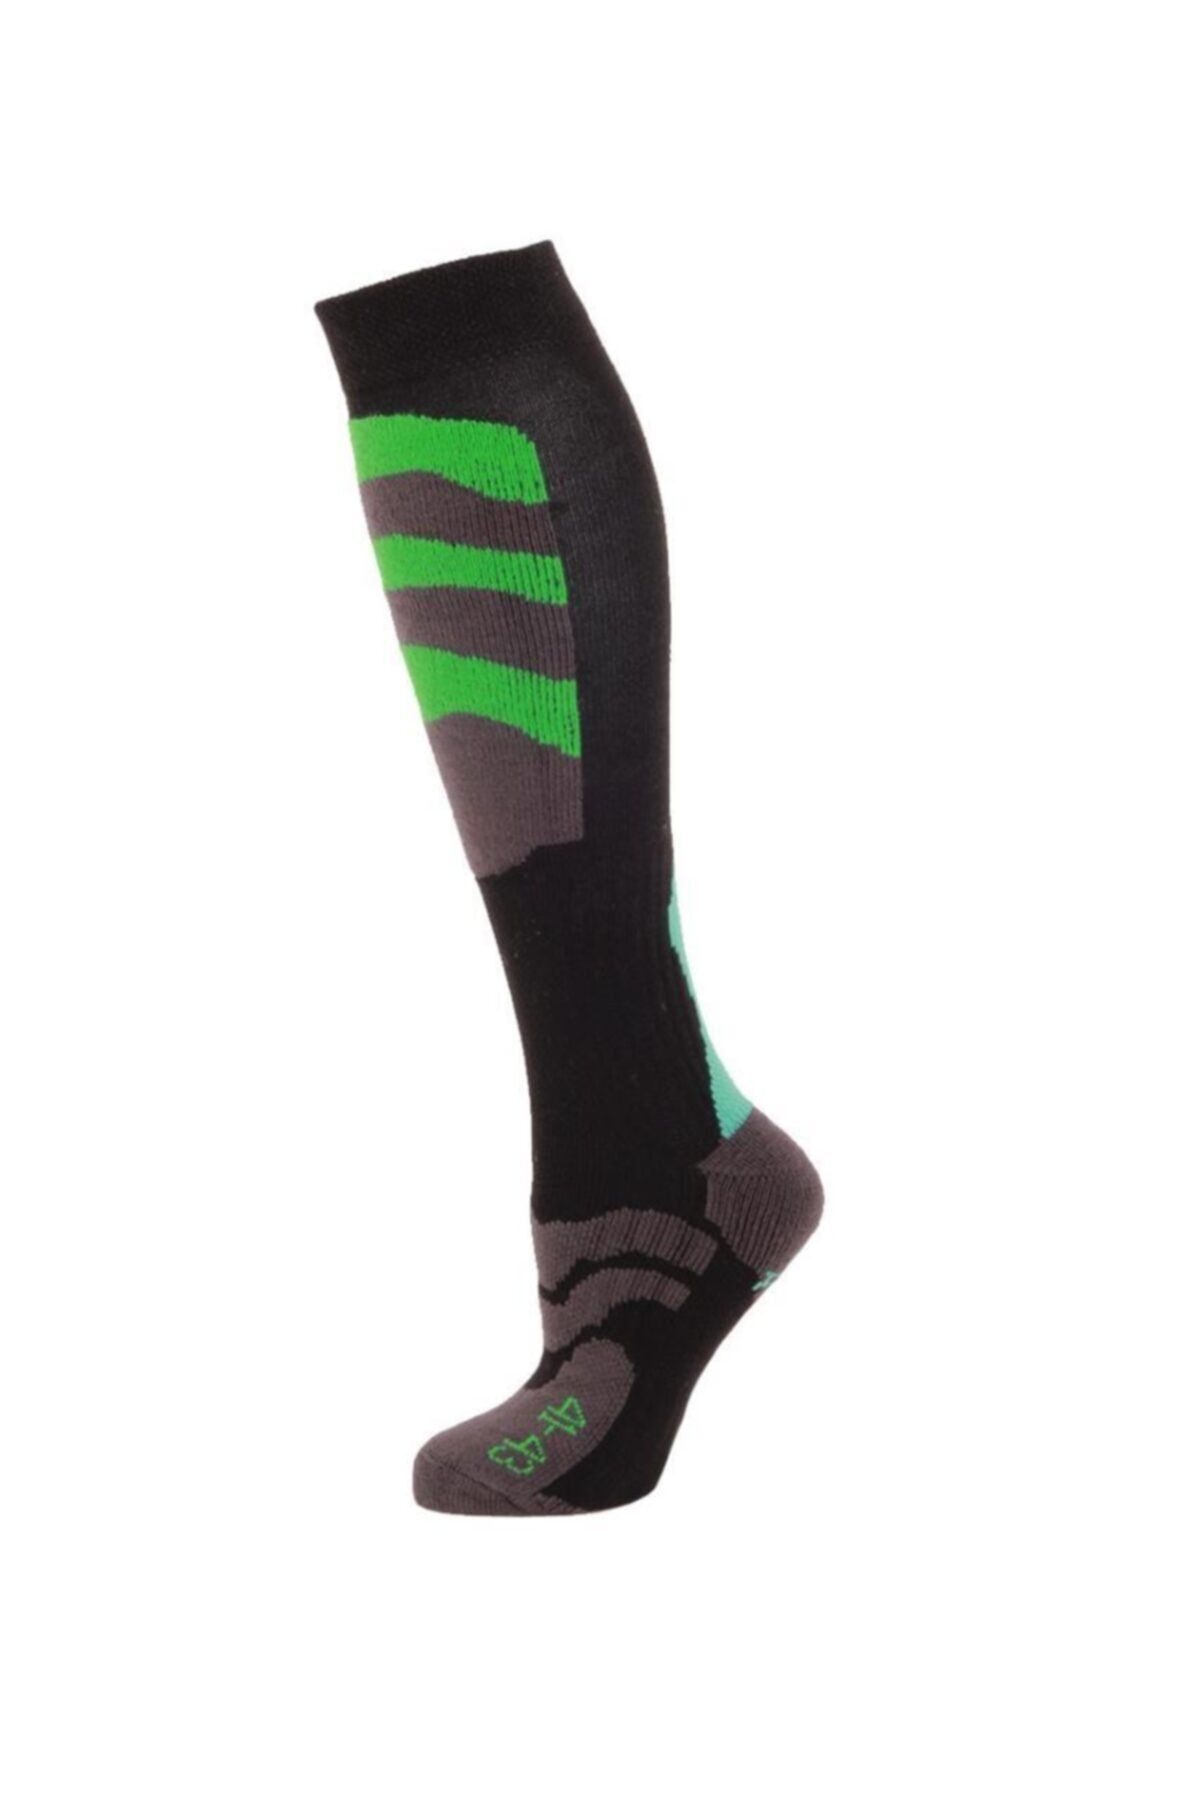 Panthzer Ski Socks Erkek Kayak Çorap Yeşil/mavi